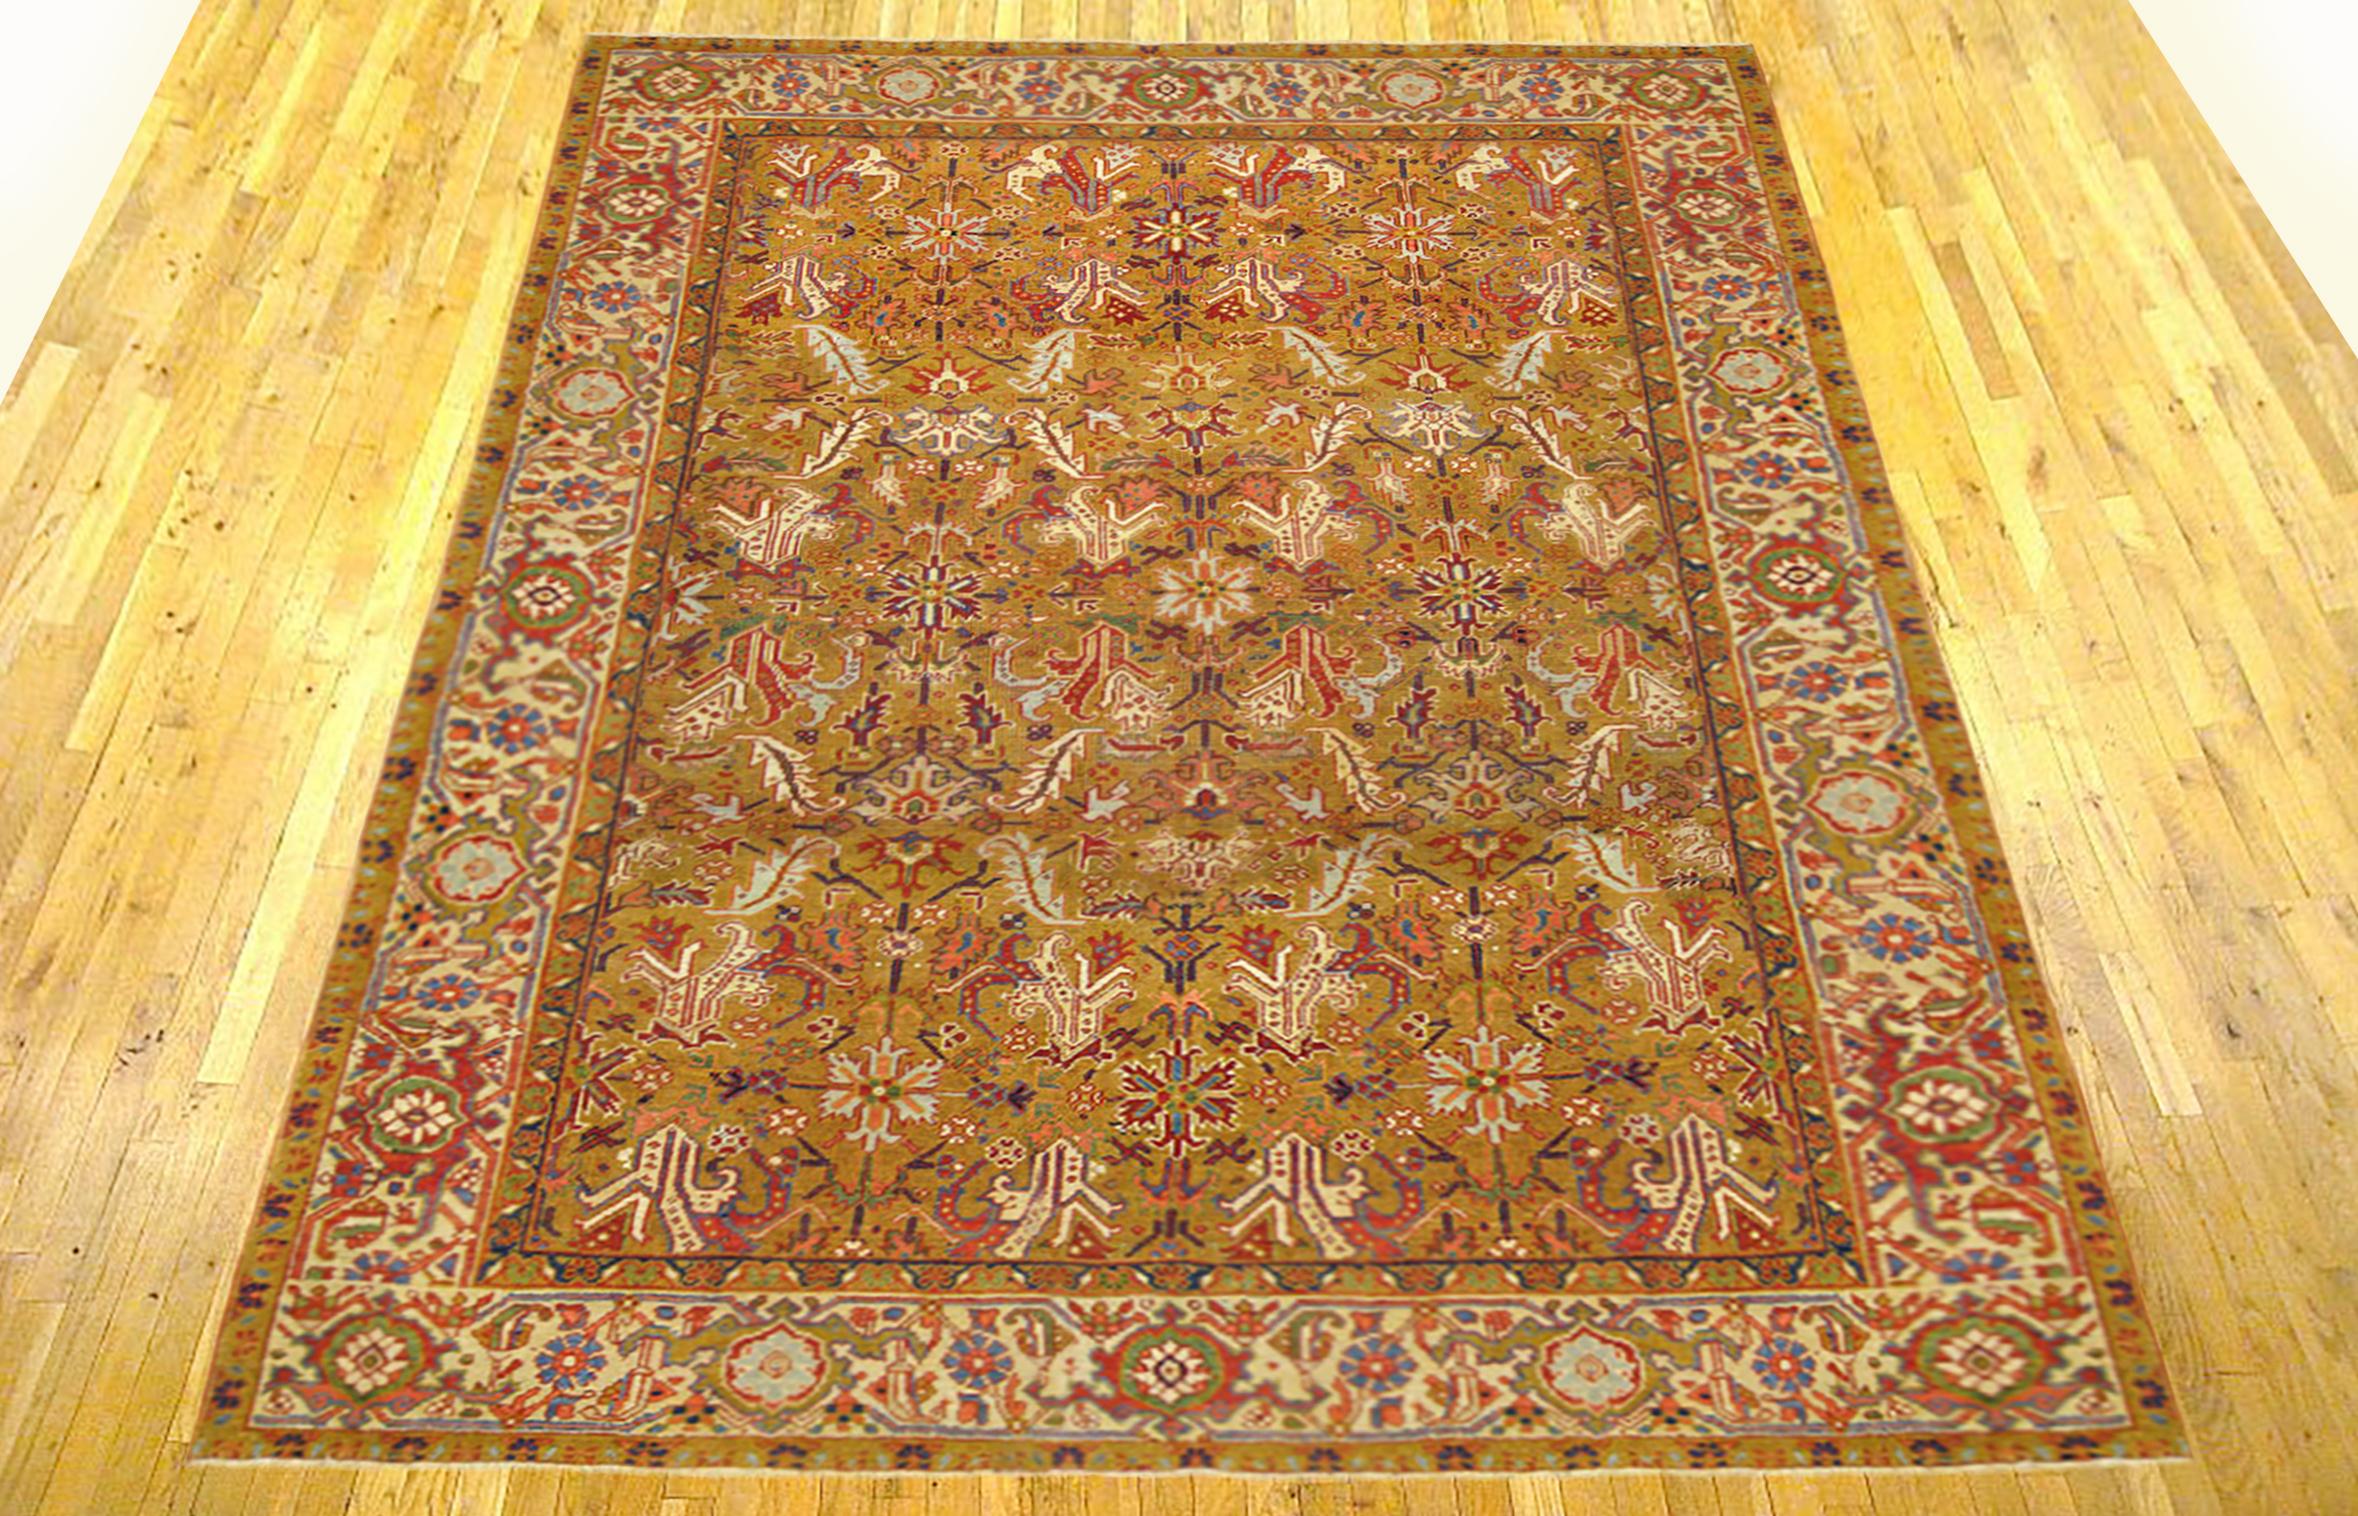 Antique Persian Heriz Oriental rug, room size

An antique Persian Heriz oriental rug, size 9'10